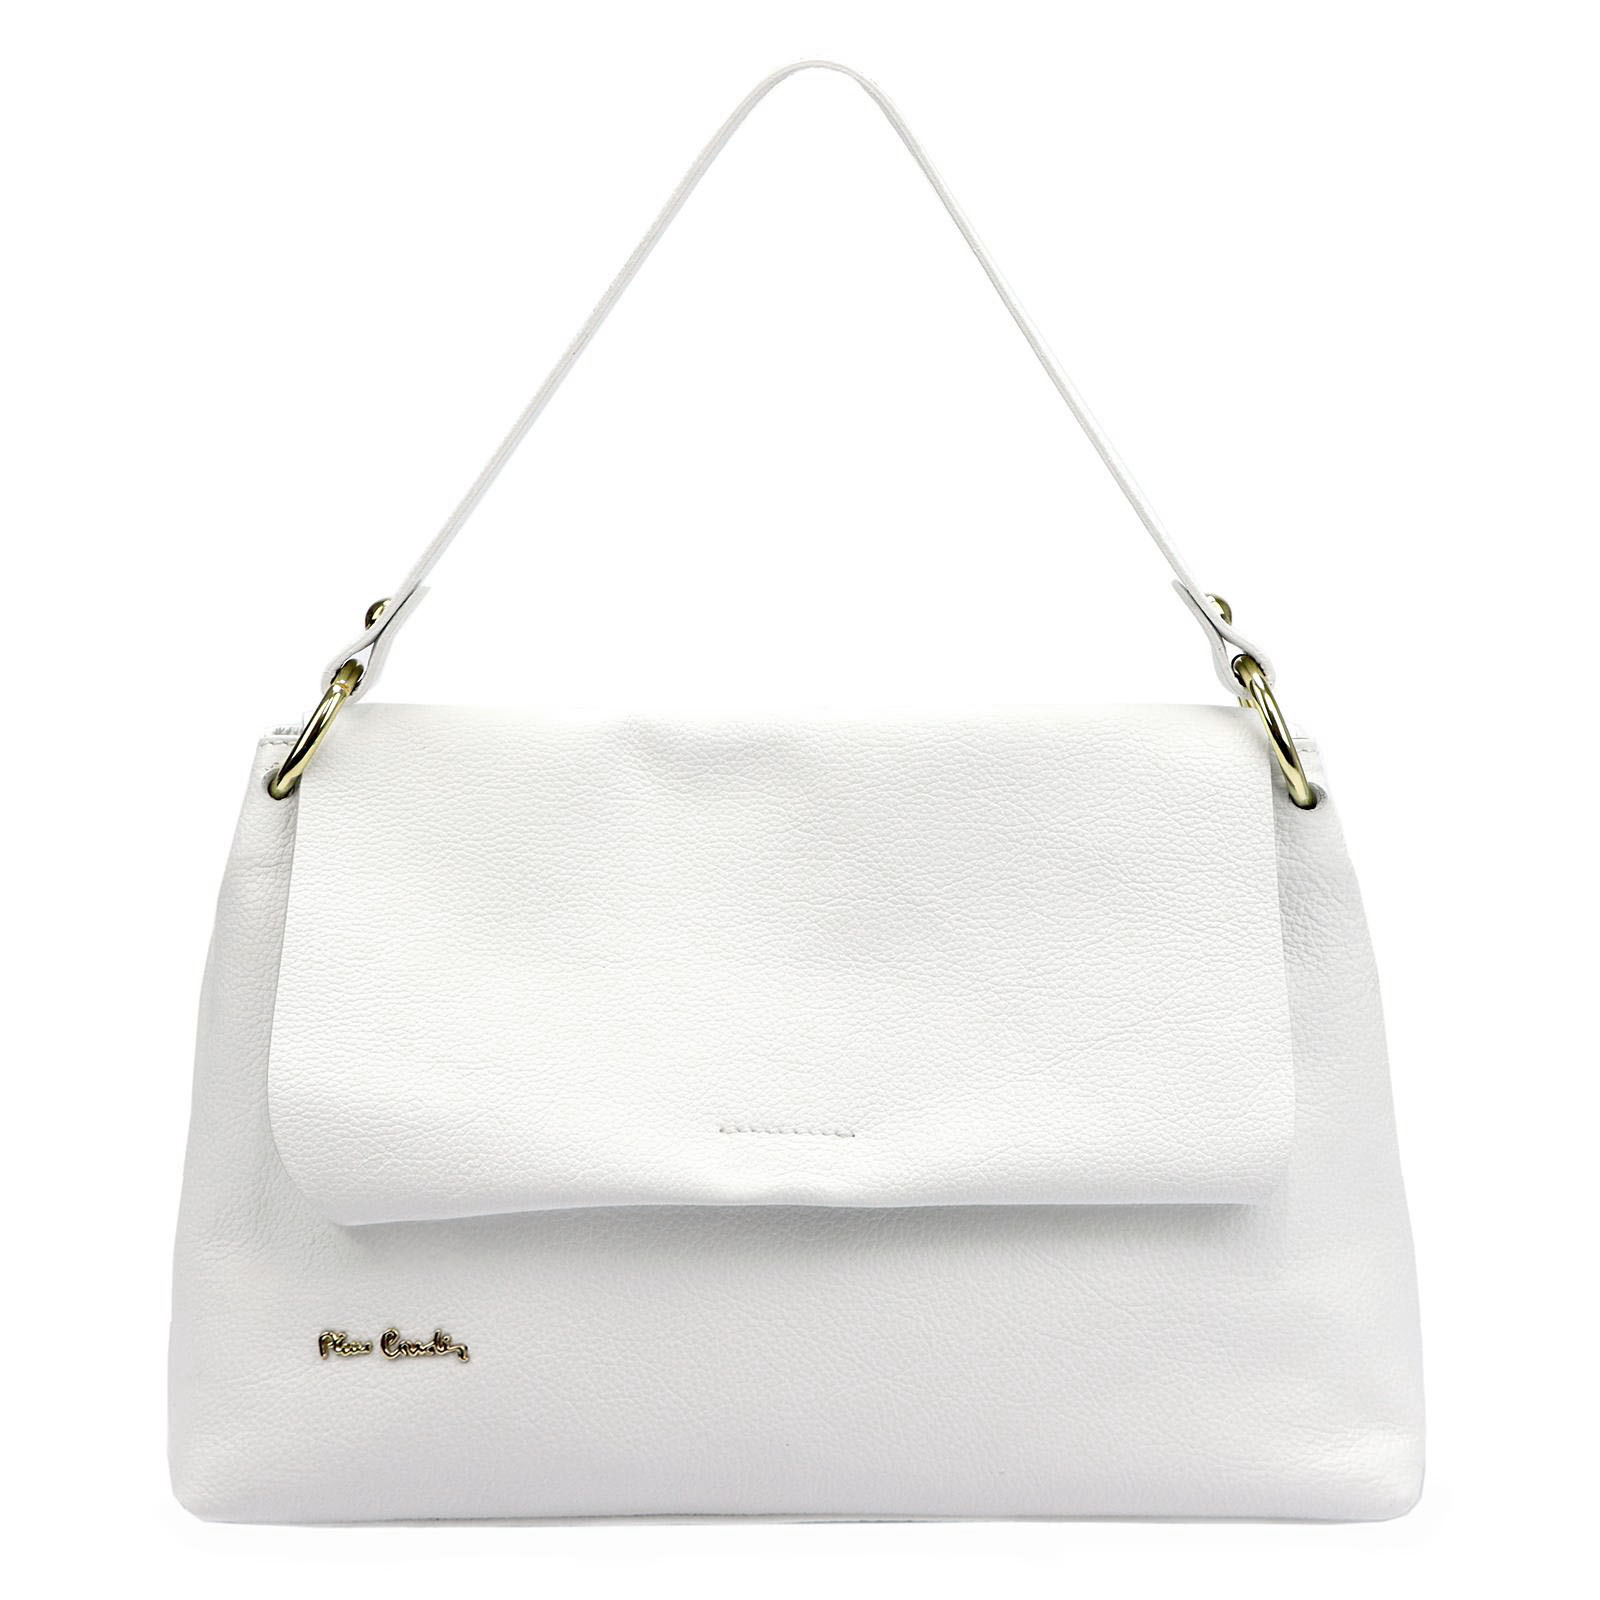 Biela kožená kabelka Pierre Cardin strednej veľkosti